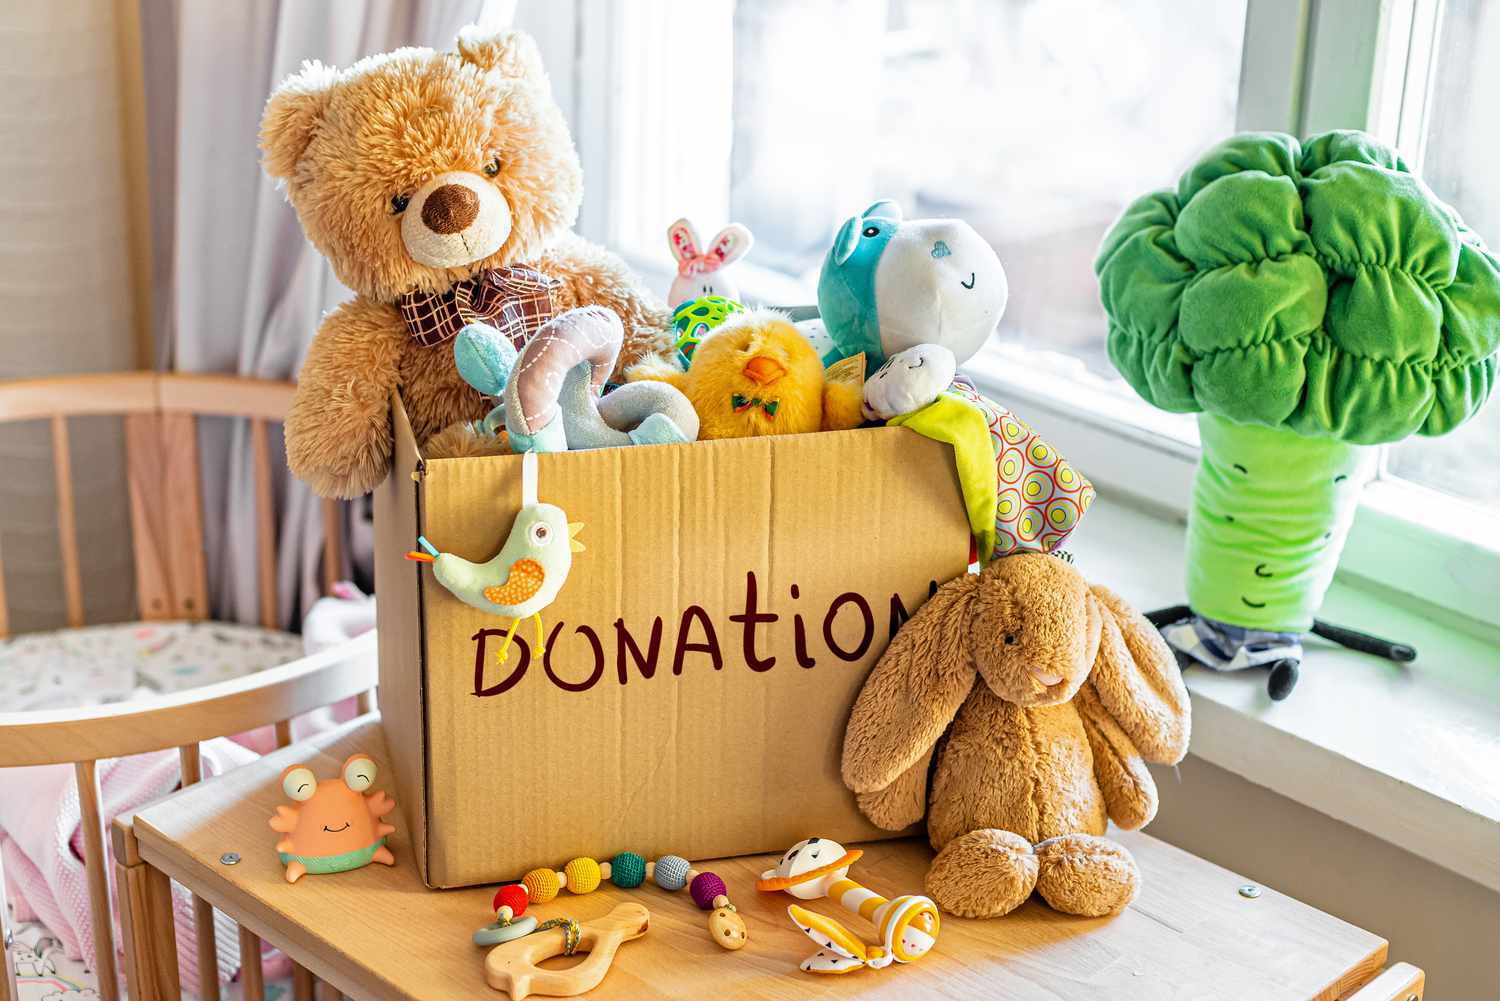 caja de donación de juguetes